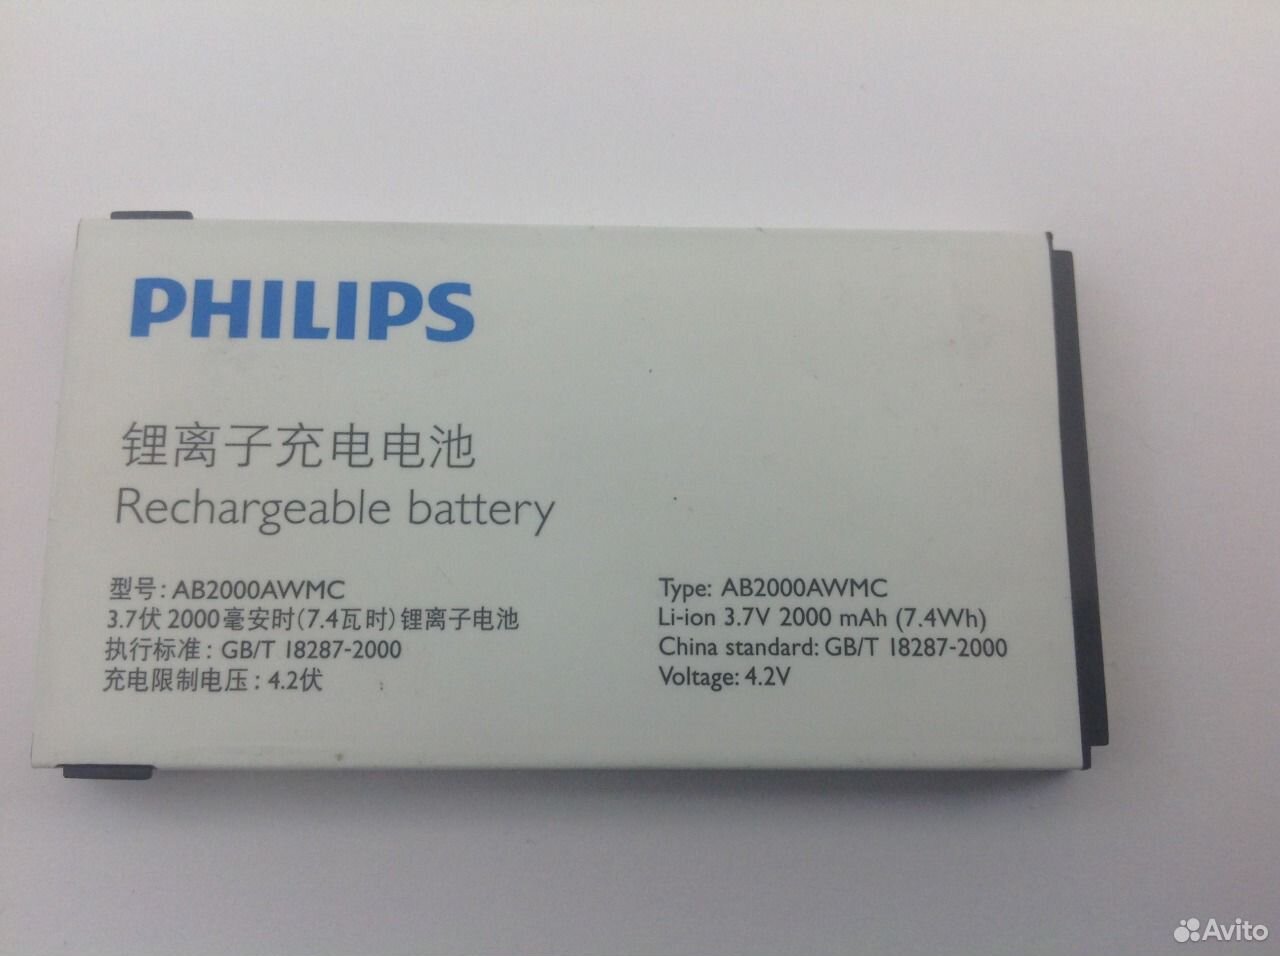 Купить аналог аккумулятора. Ab2000awmc аккумулятор Philips. Аккумулятор Philips ab1900awm. Аккумулятор ab2040awmc. Ab2900awmc.